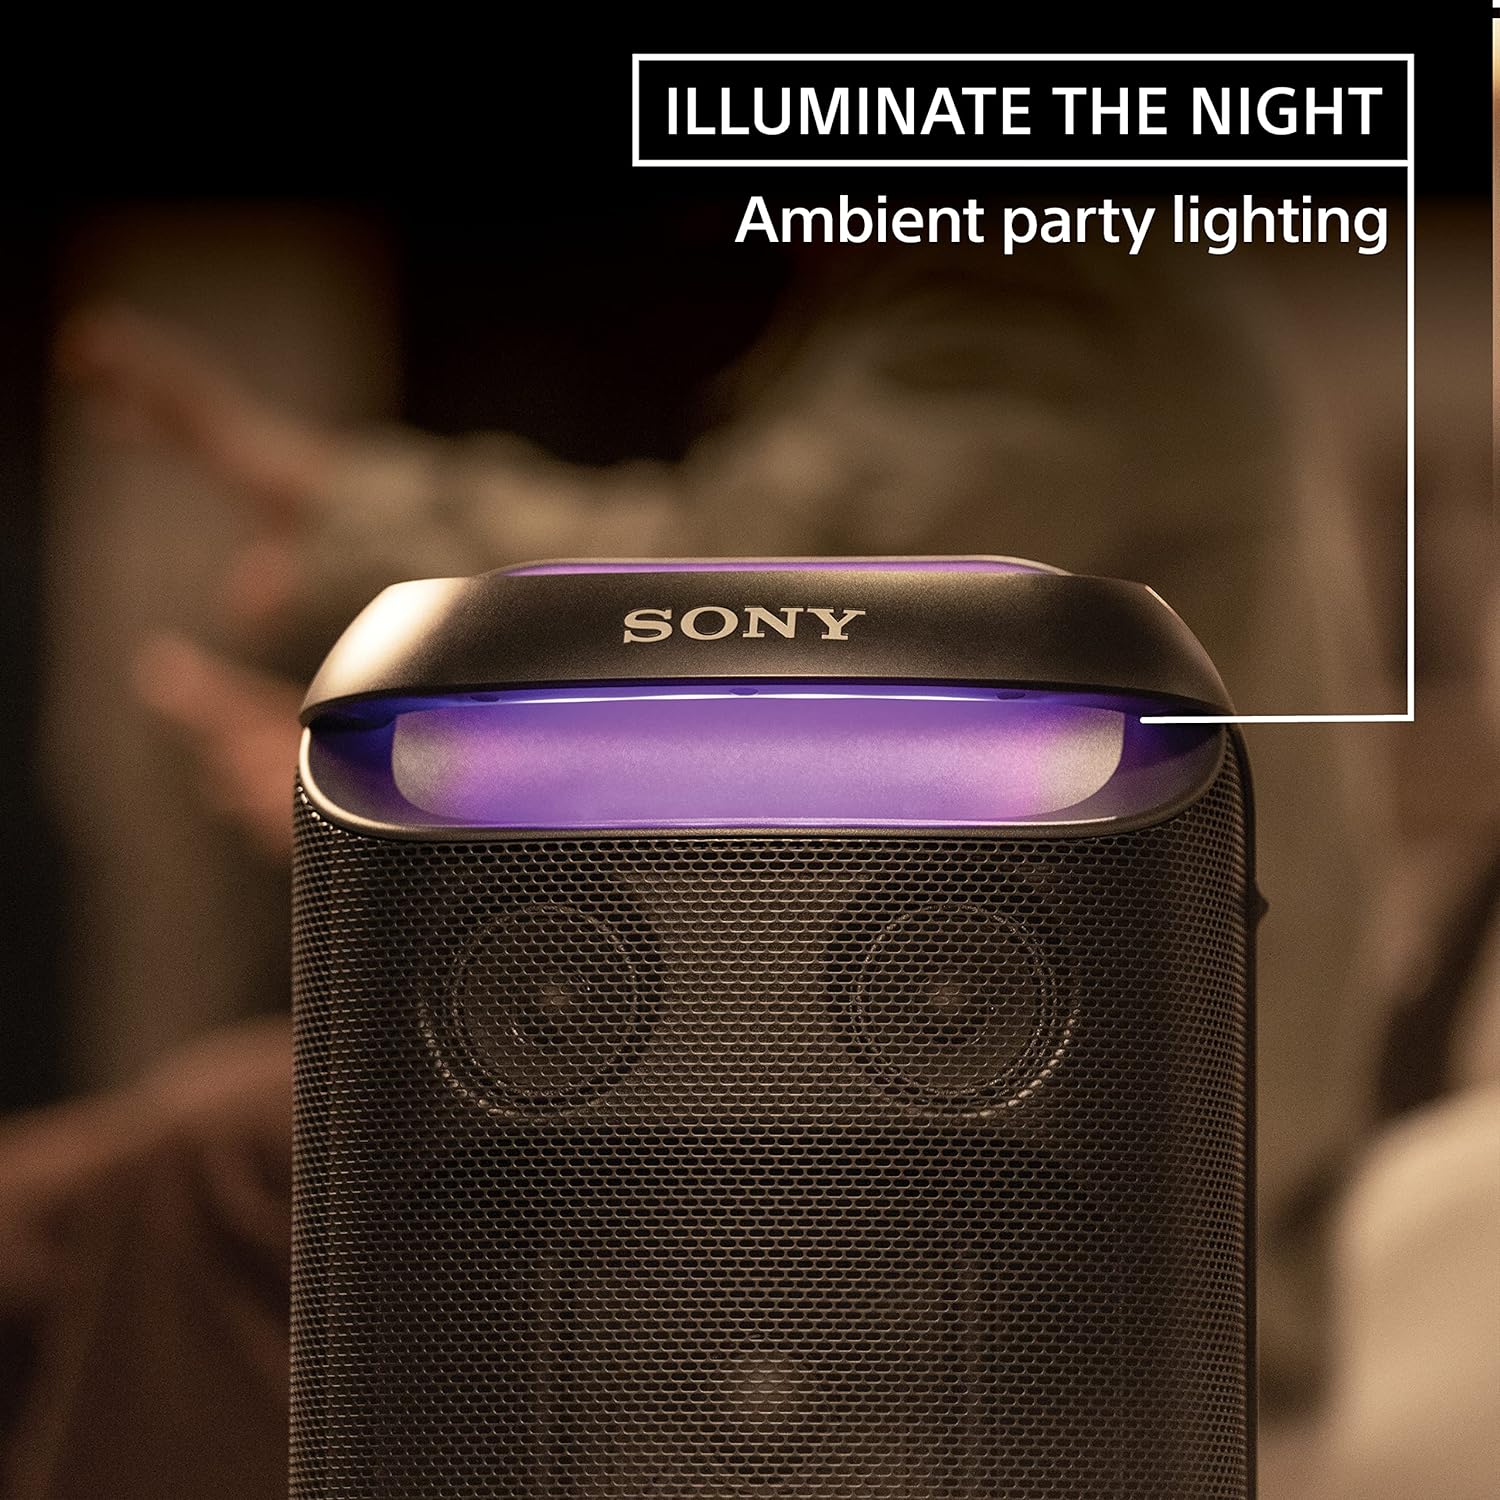 Sony SRS-XV800 X-Series Wireless Portable Bluetooth Karaoke Party Speaker